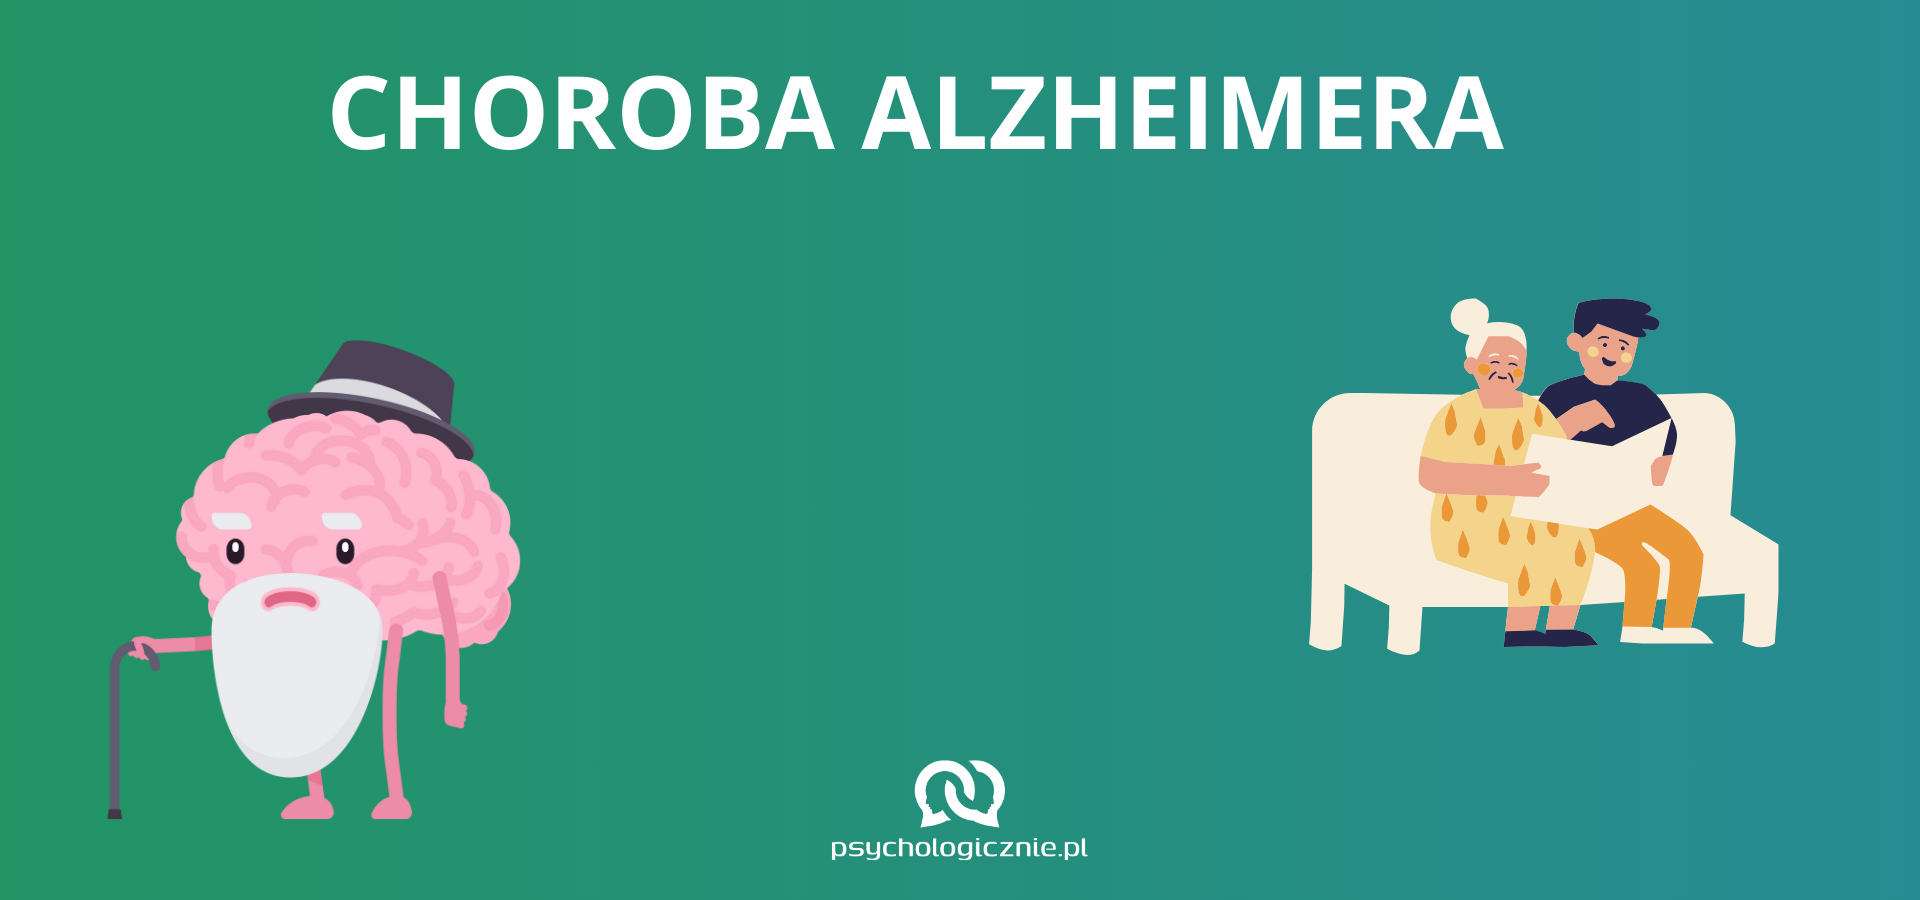 Choroba alzheimera - przyczyny, objawy, leczenie i wsparcie